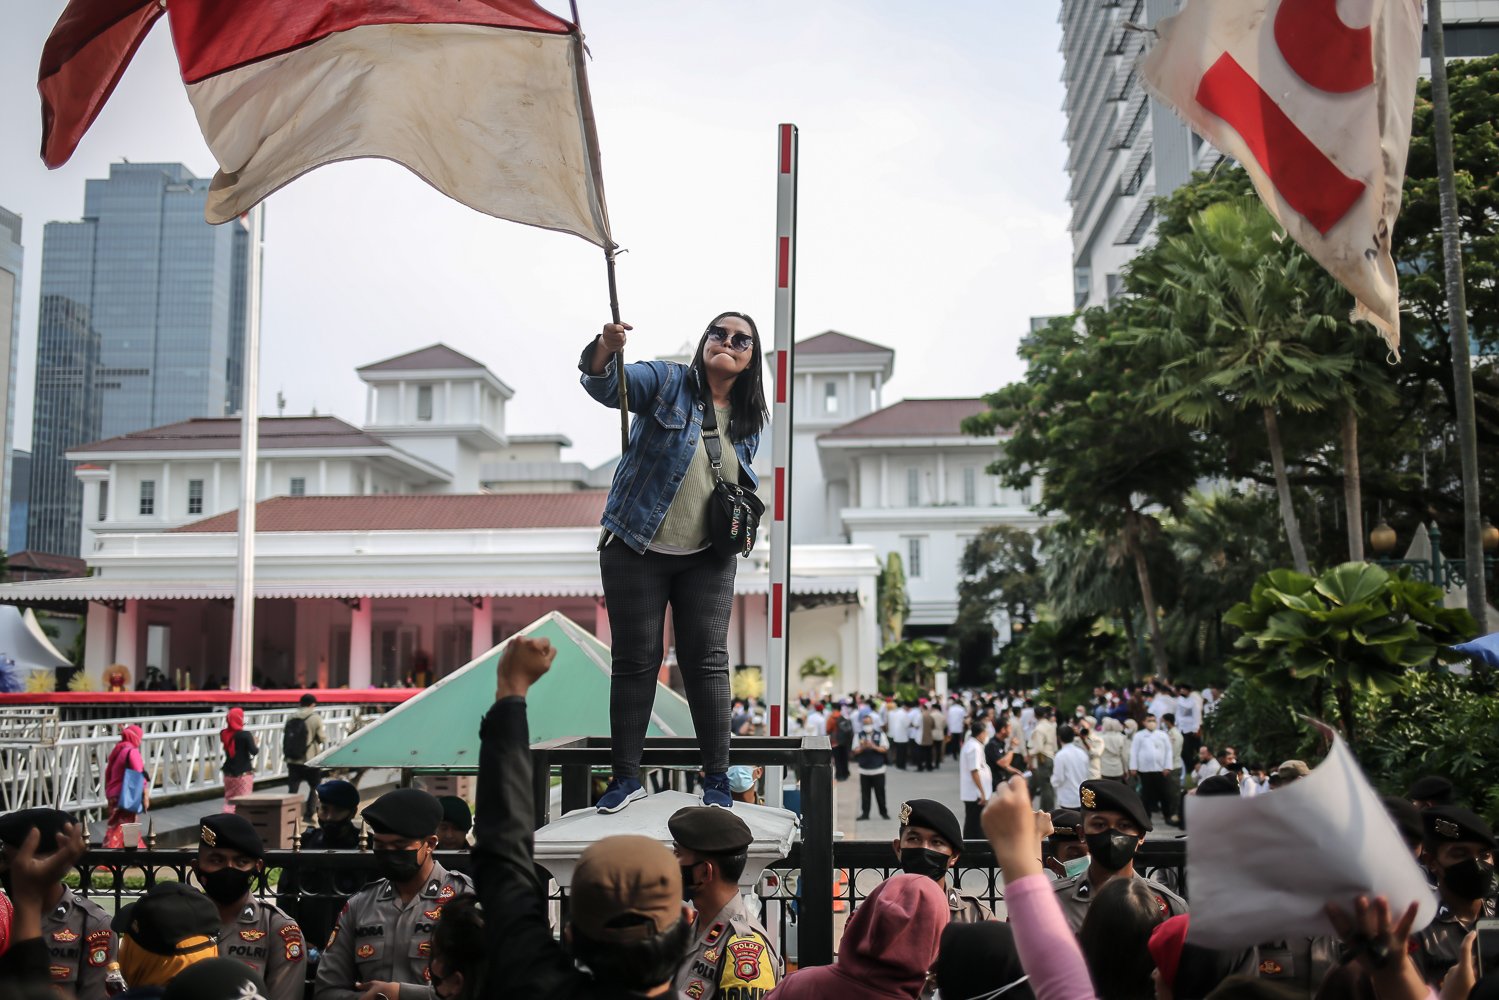 Sejumlah warga yang tergabung dalam koalisi perjuangan warga Jakarta (KOPAJA) melakukan aksi unjuk rasa di depan gedung Balai Kota Jakarta, Jumat (16/10).Dalam aksi tersebut, warga memberikan rapor merah kepada Anies Baswedan karena dinilai belum menyelesaikan permaslahan selama menjabat sebagai Gubernur DKI Jakarta.